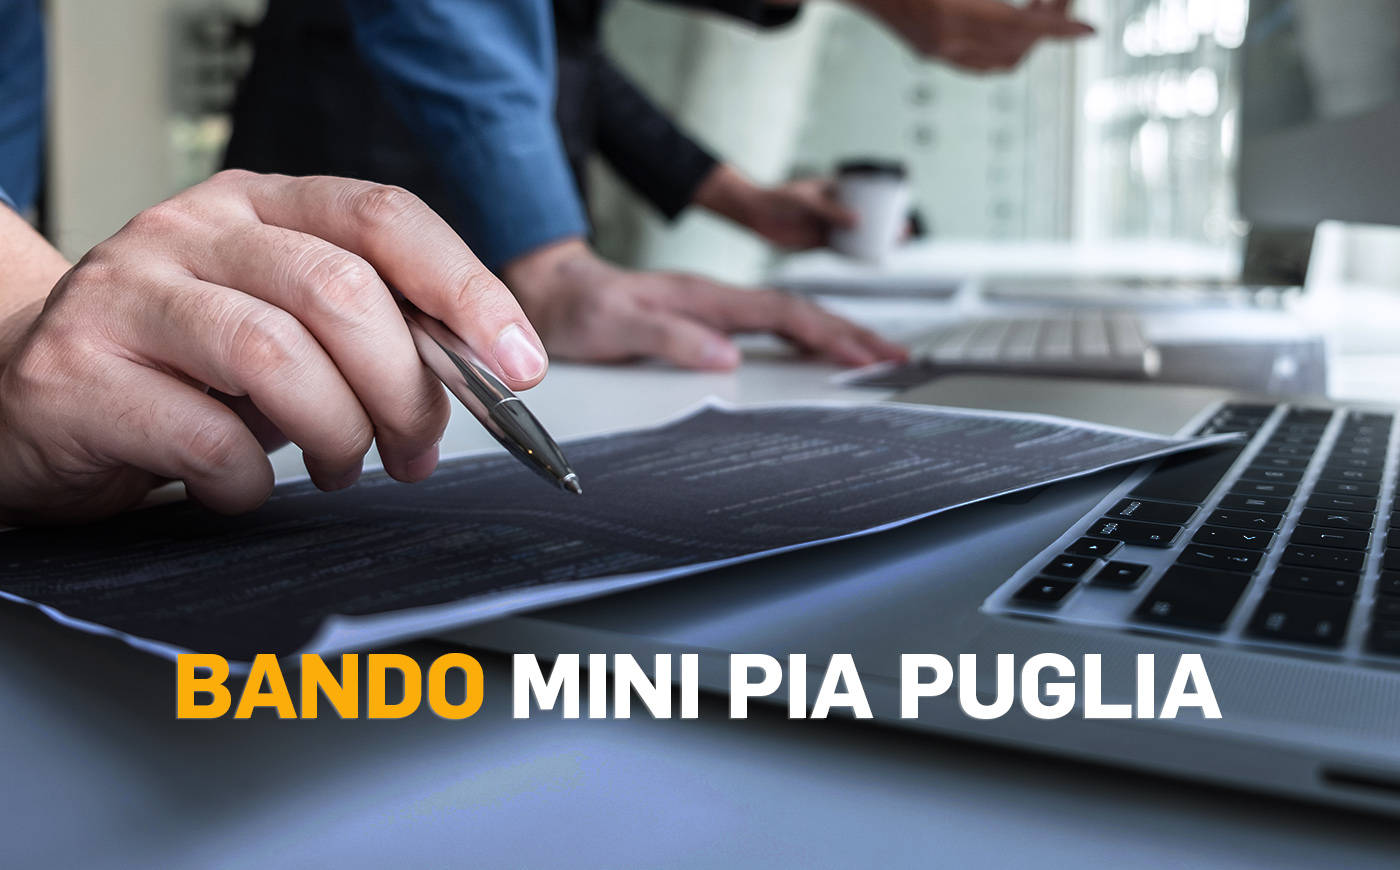 Bando MiniPIA Puglia: sostegno per micro e piccole imprese per l'innovazione digitale e competitivit